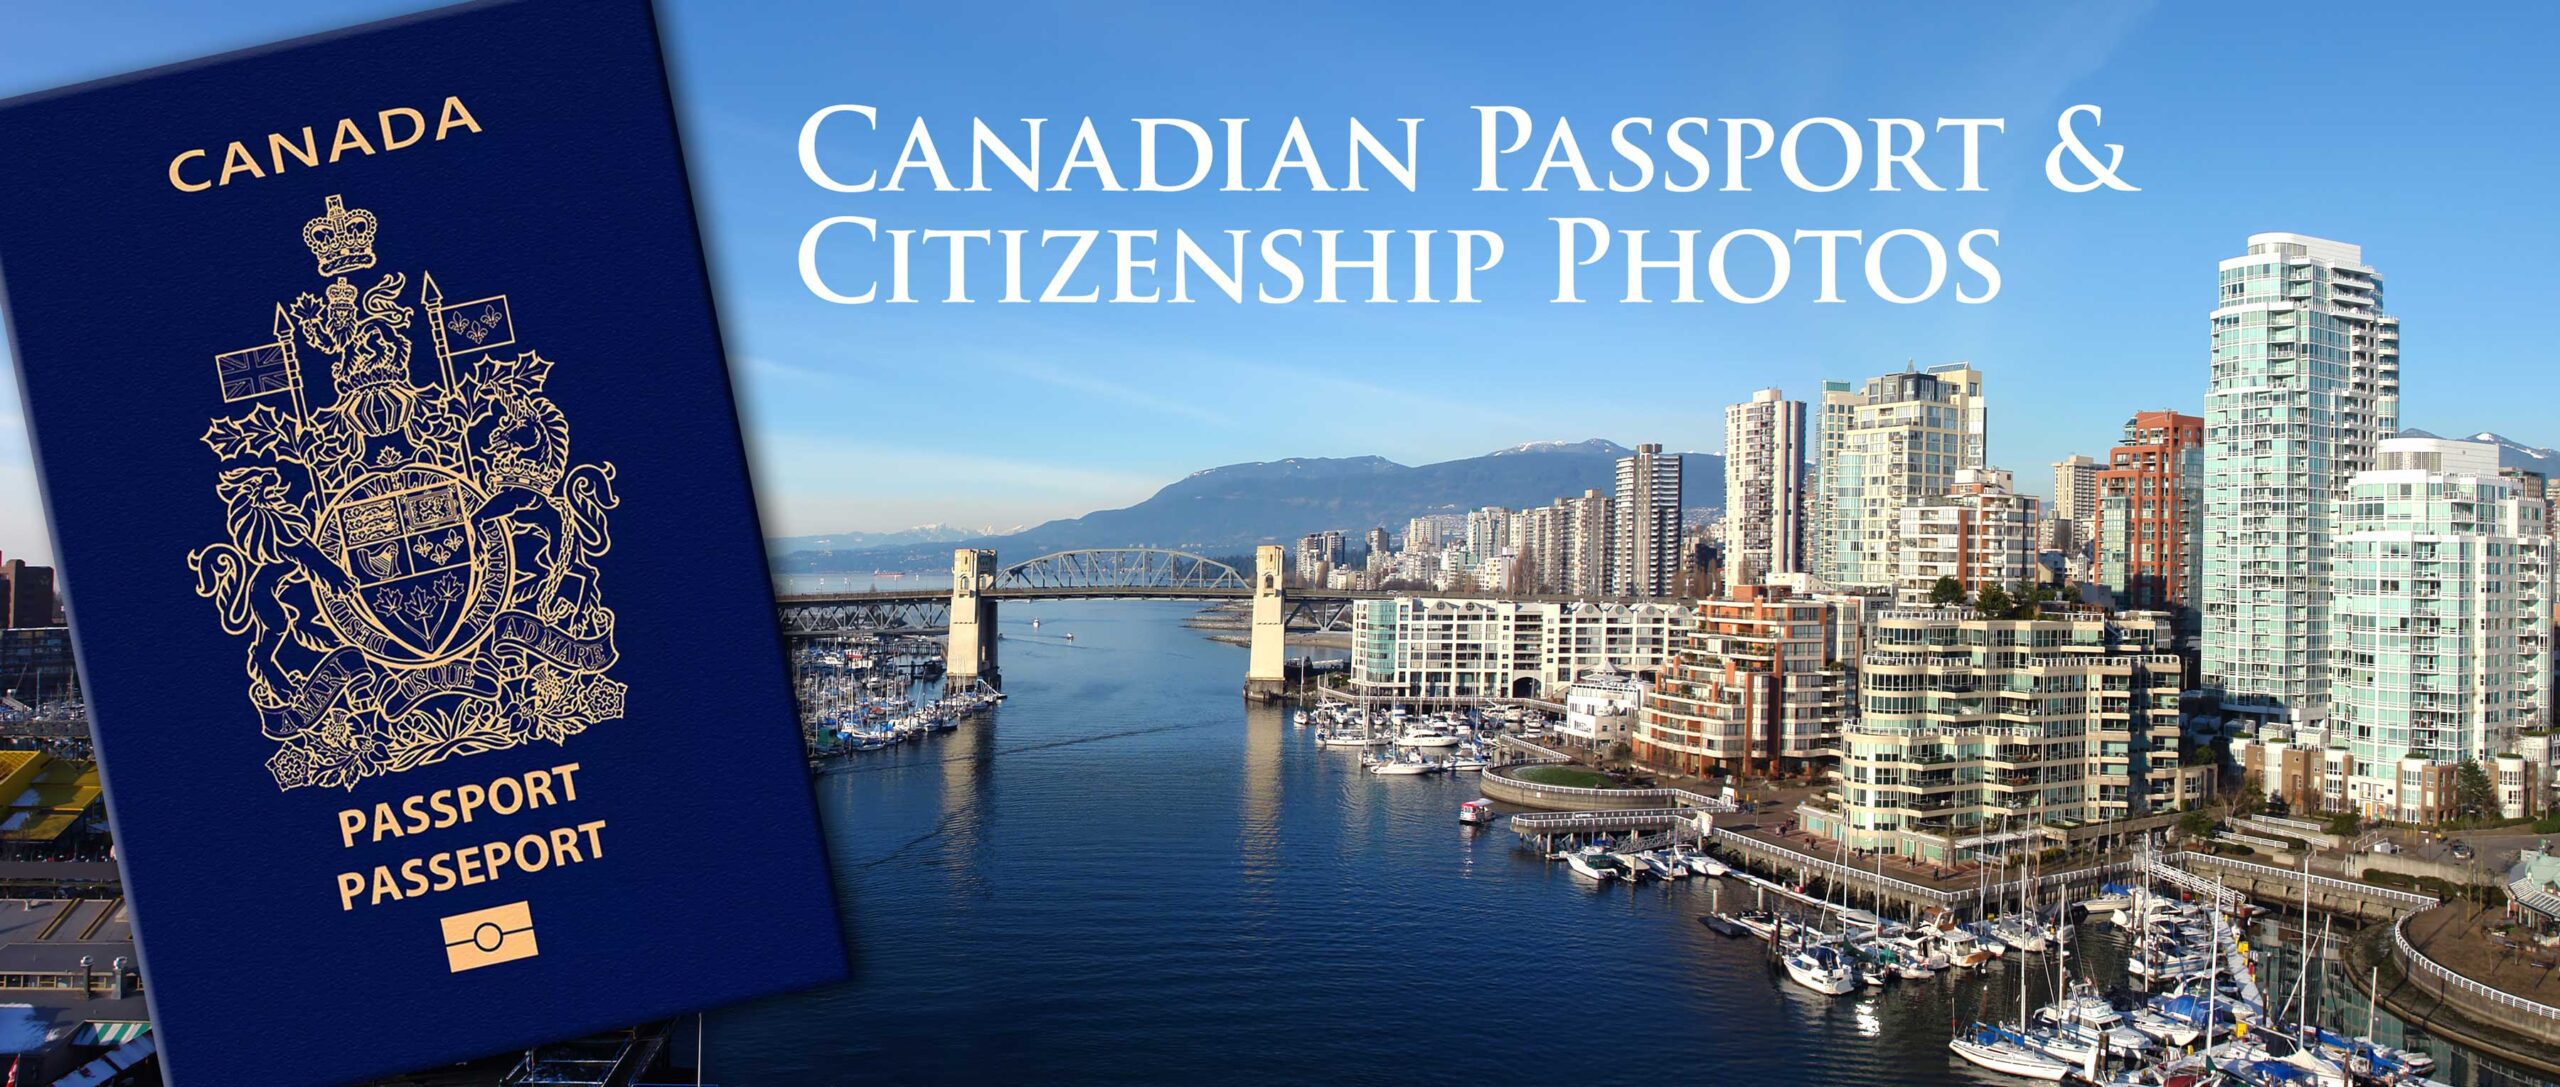 Canada passport & citizenship photos